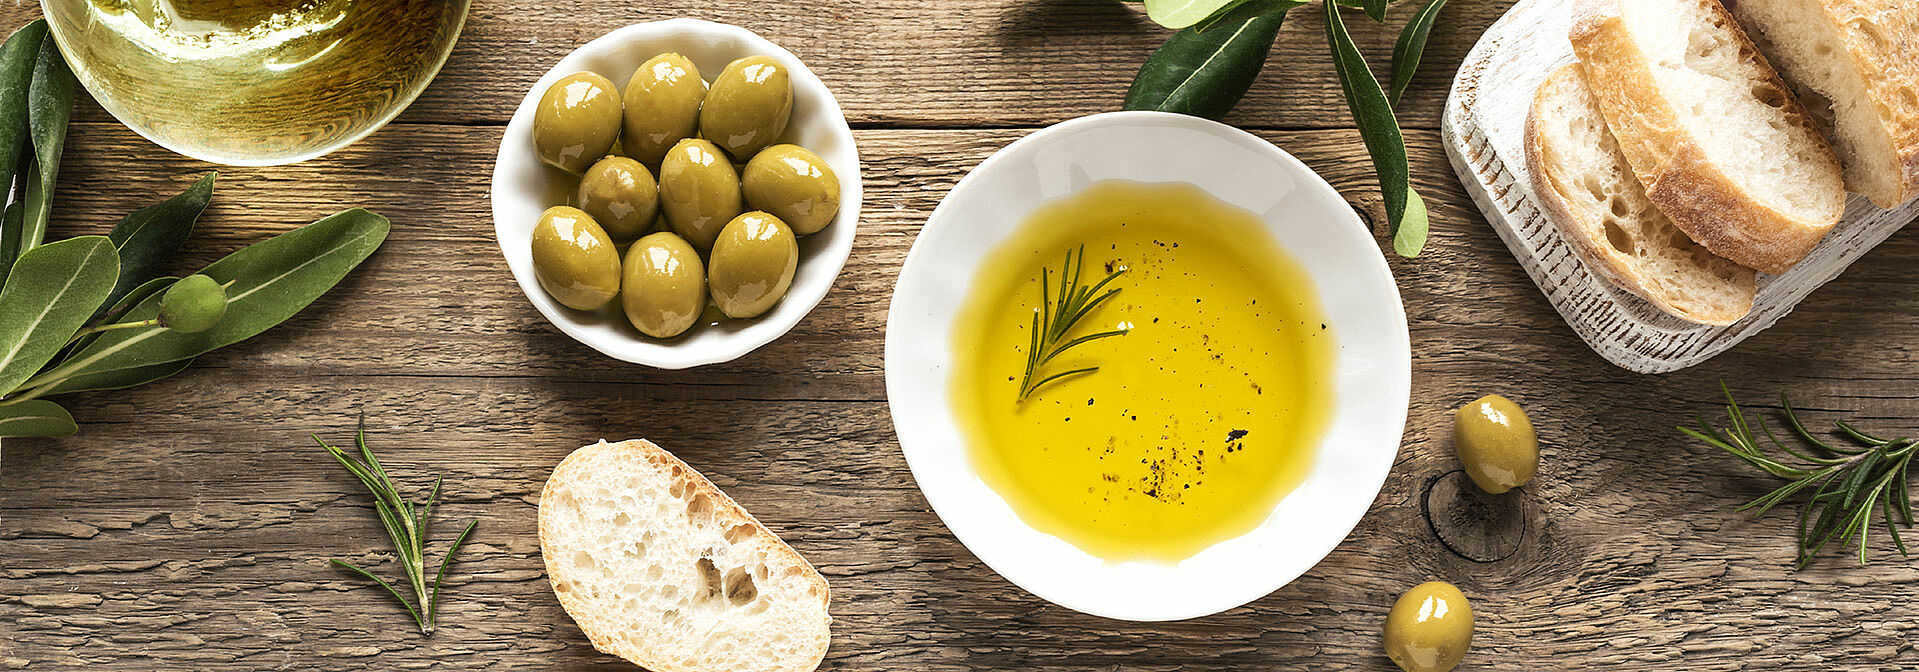 Olivenöl und Brot auf einem Tisch